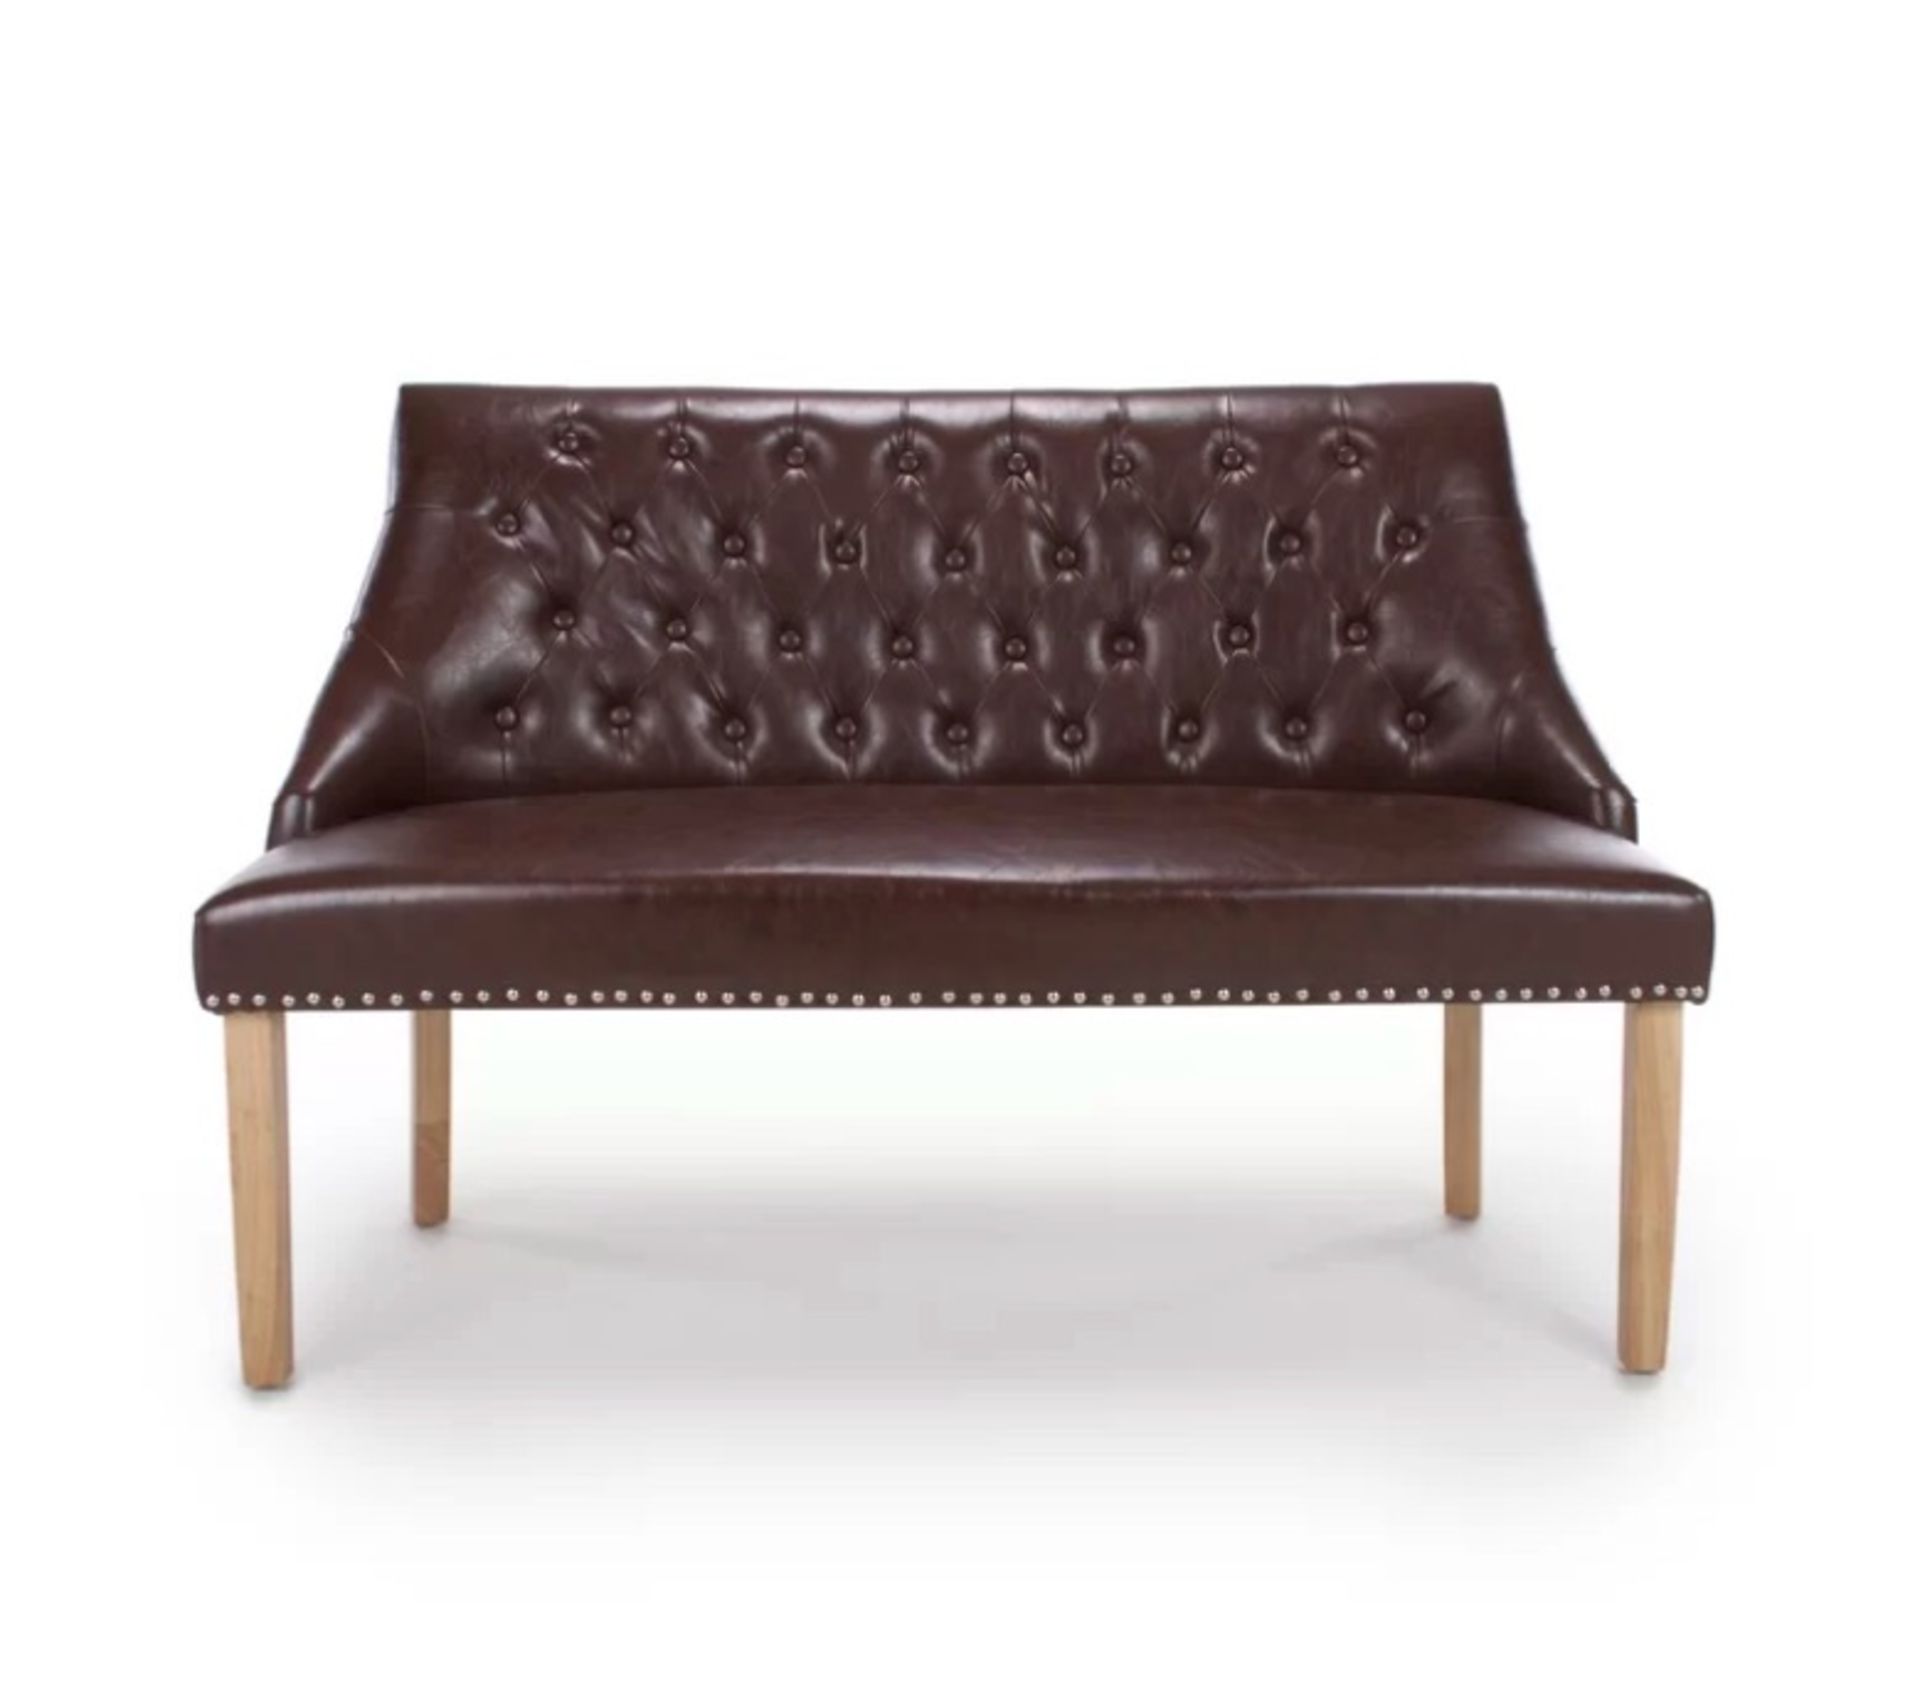 Antique Upholstered Bench Rexine Upholstered Bench Tufted Back Distinguished Craftsmanship